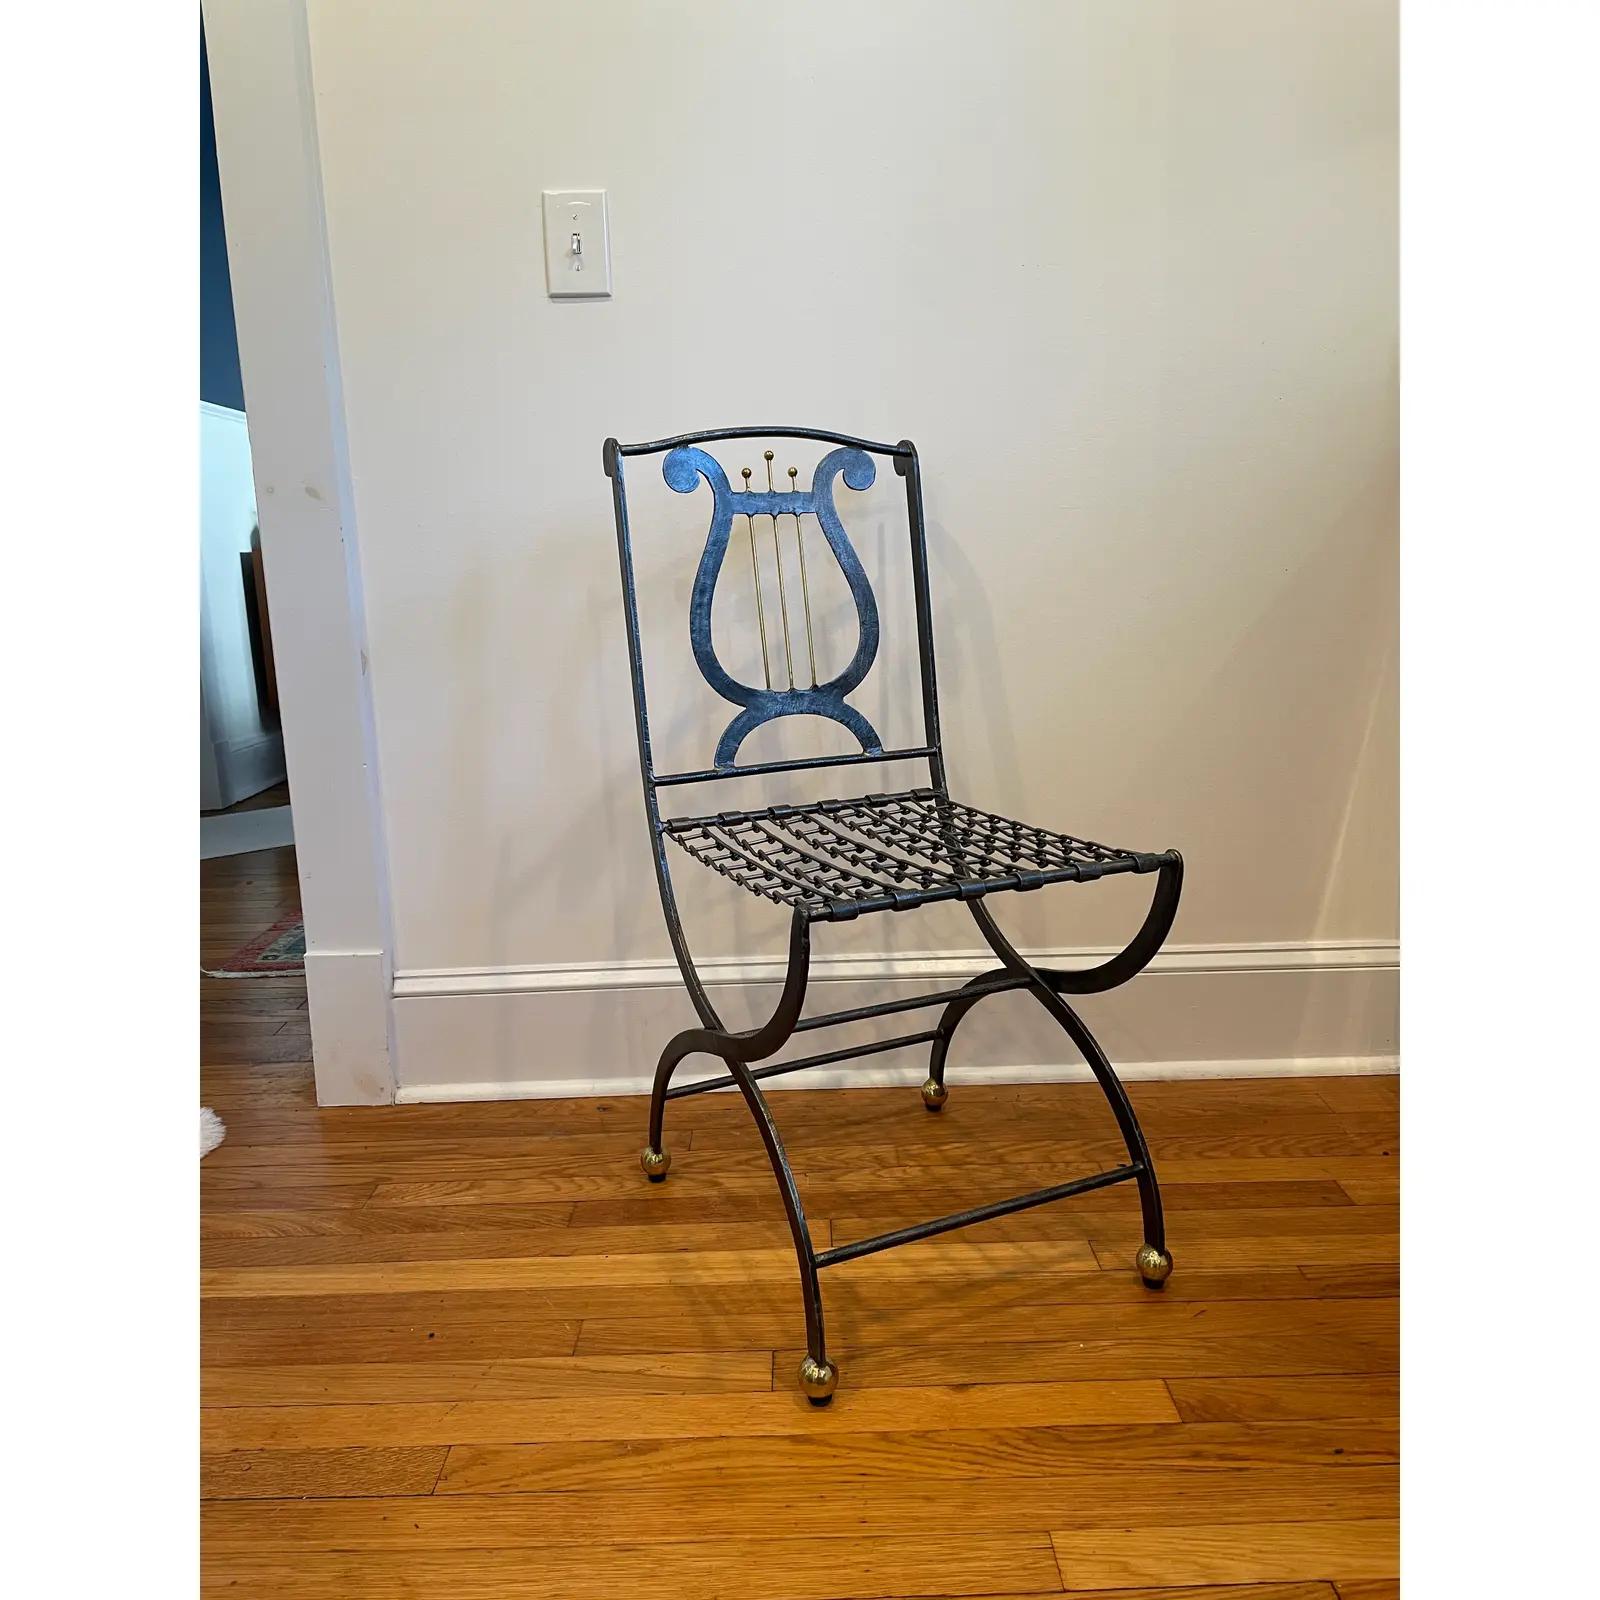 Einzigartiger Maitland Smith Folding Iron Chair mit Leierrückenmotiv. Kettenglied-Sitzgurt. Abgerundet mit Messingkugelfüßen und Lyra-Akzent.
Bordsteinkante nach NYC/Philly $400